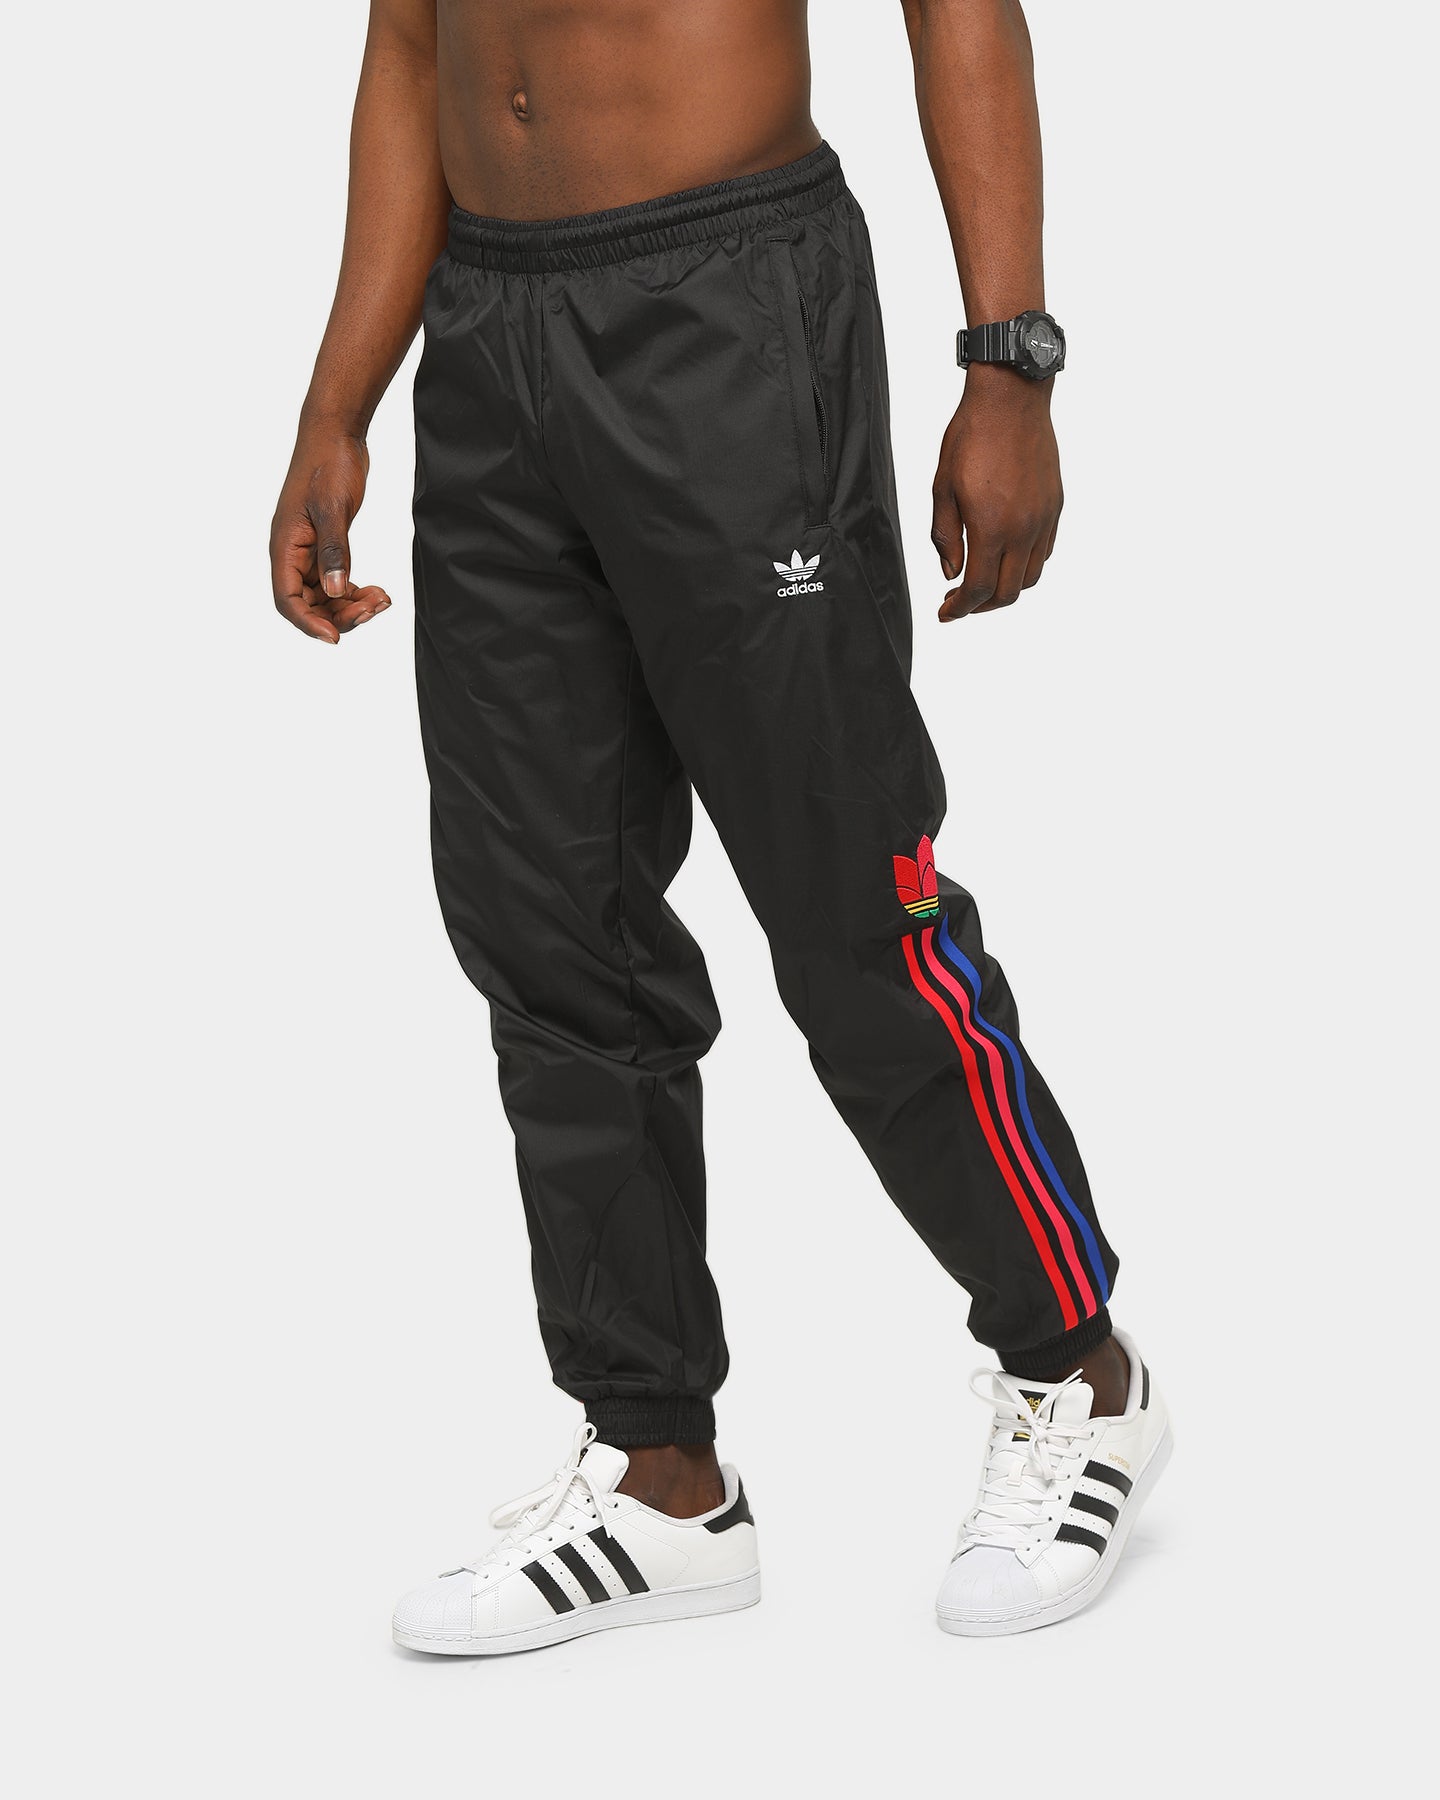 adidas 3d trefoil pants